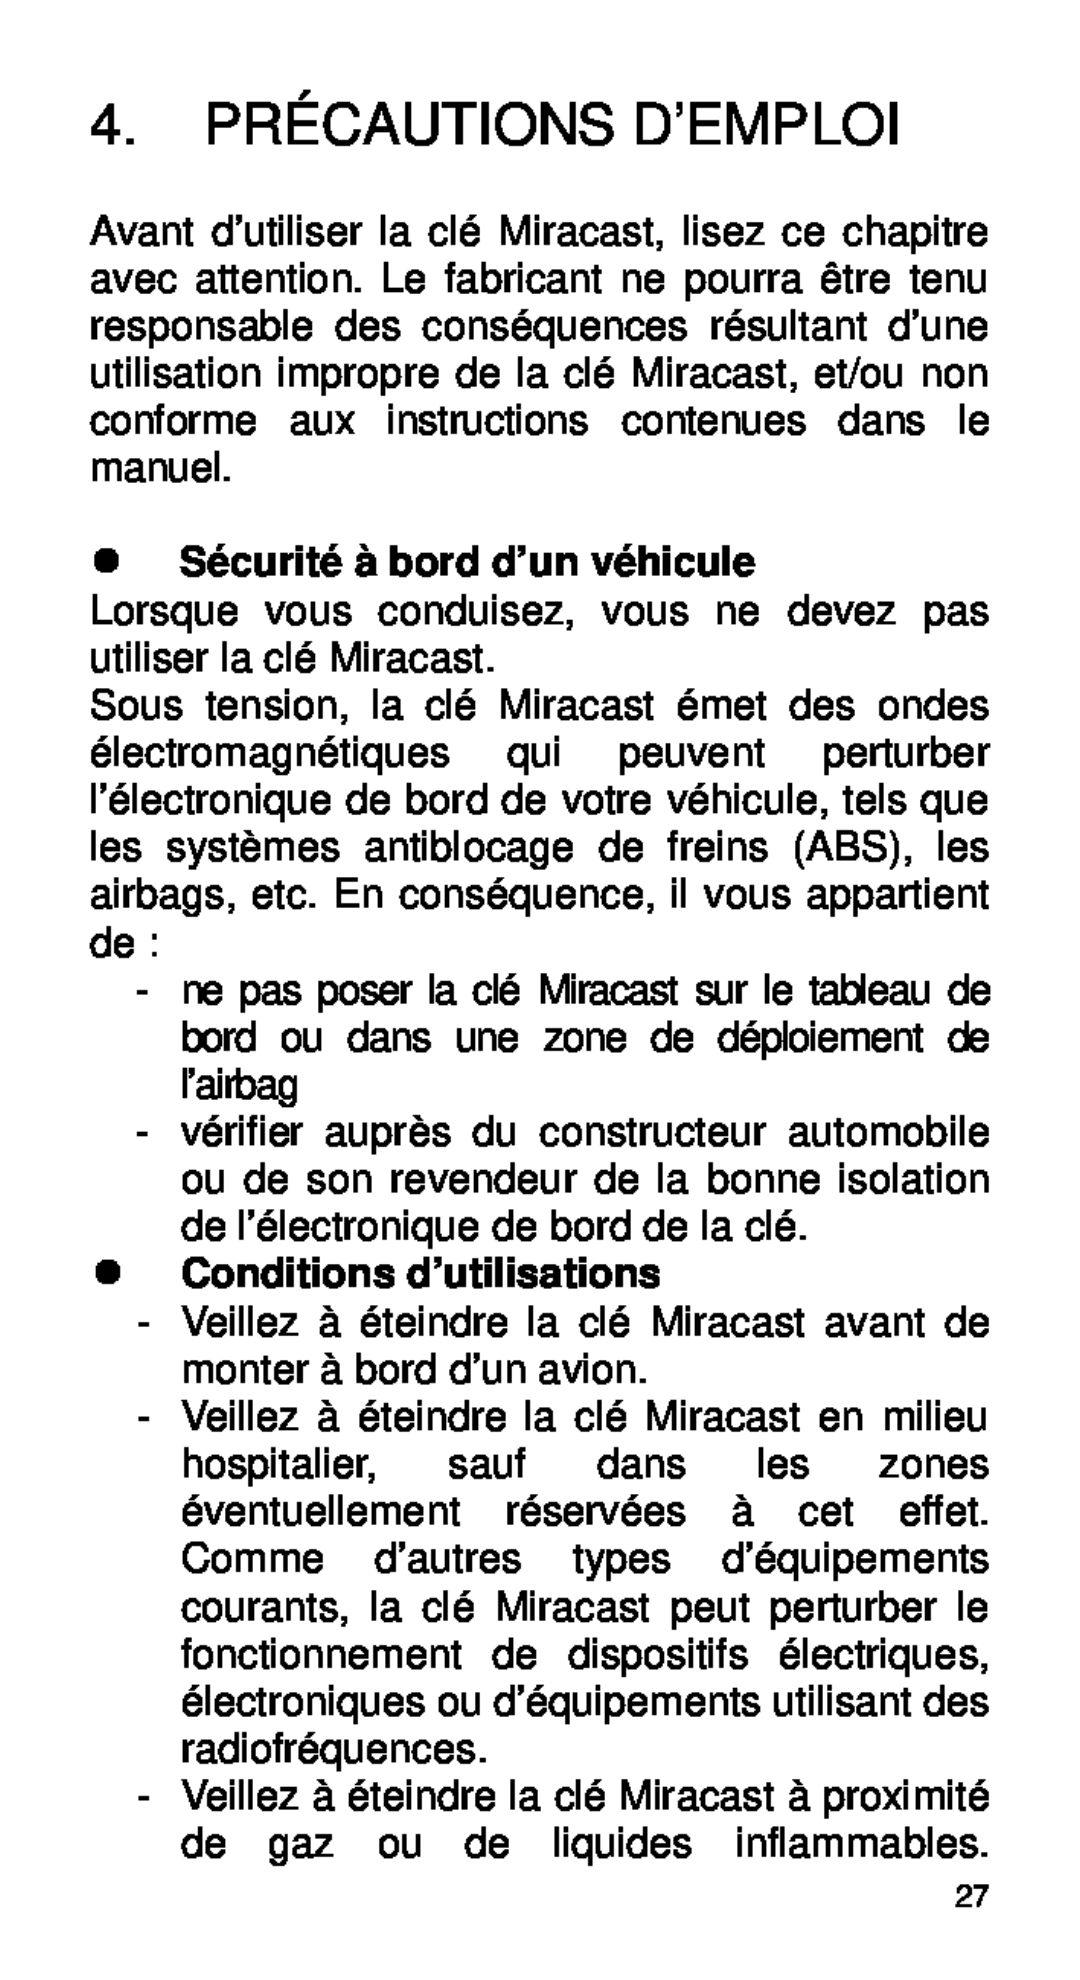 Alcatel Home V101 manual 4. PRÉCAUTIONS D’EMPLOI,  Sécurité à bord d’un véhicule,  Conditions d’utilisations 